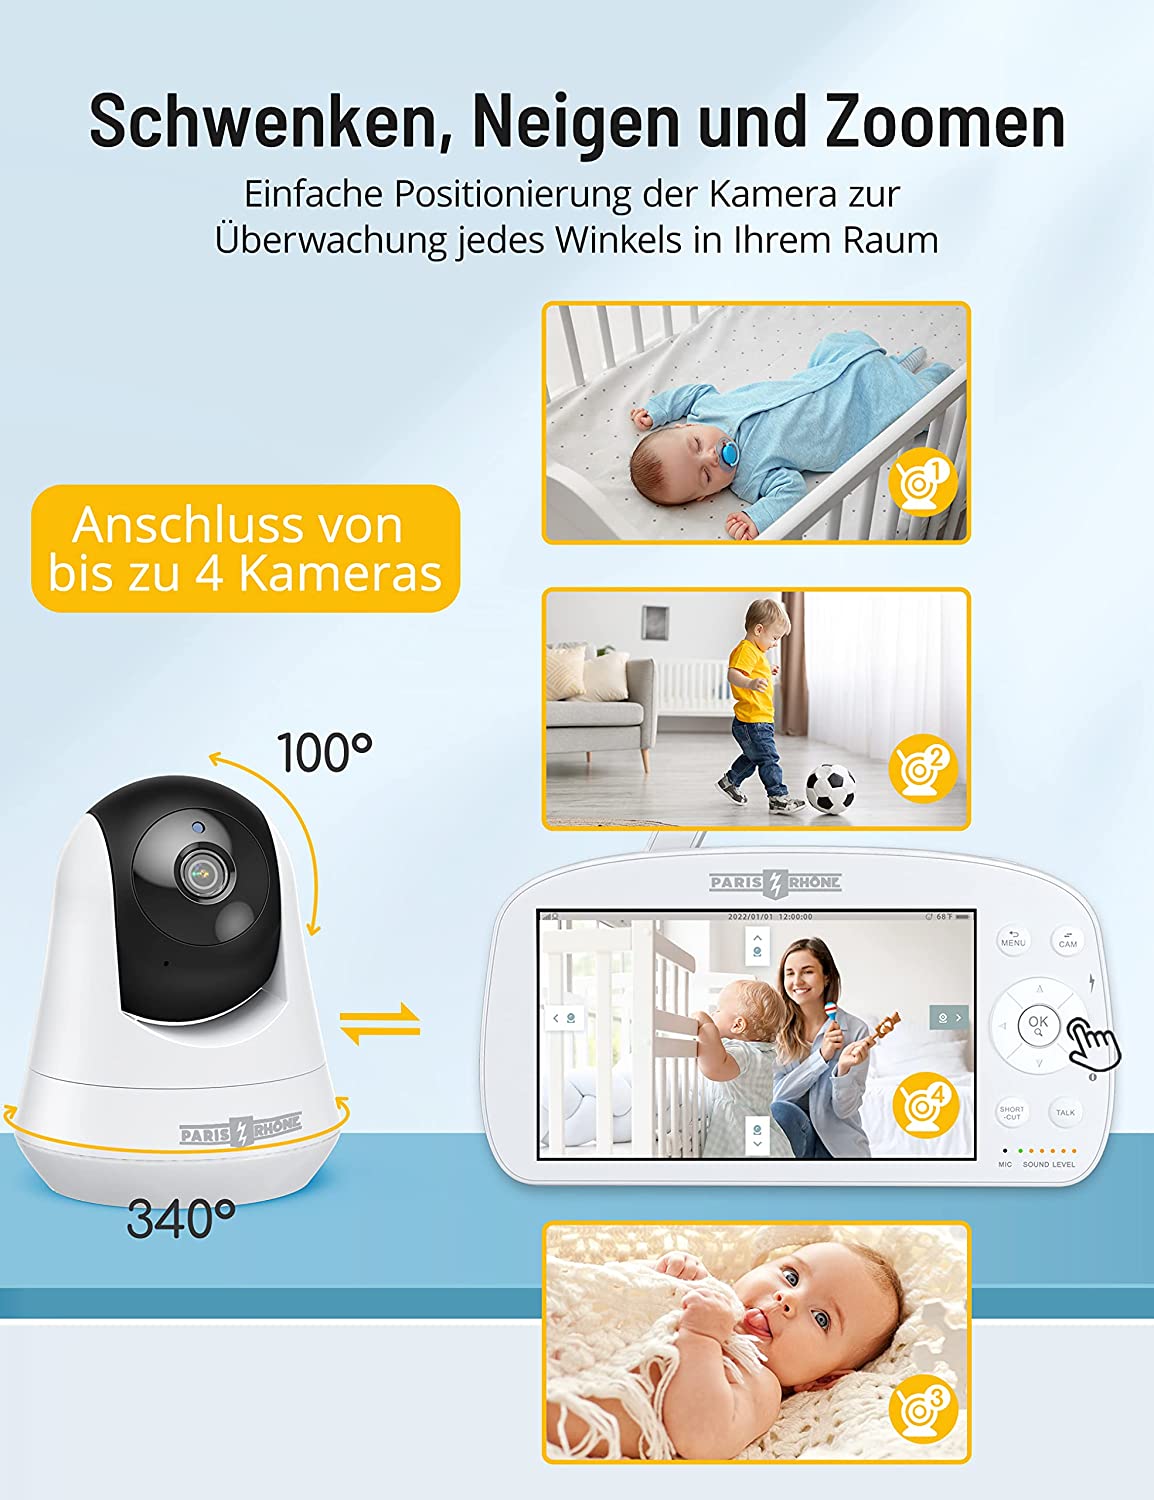 PARIS RHÔNE IH004 Babyphone mit Kamera 1080P, 5.5 Zoll großes Display Video Baby Monitor